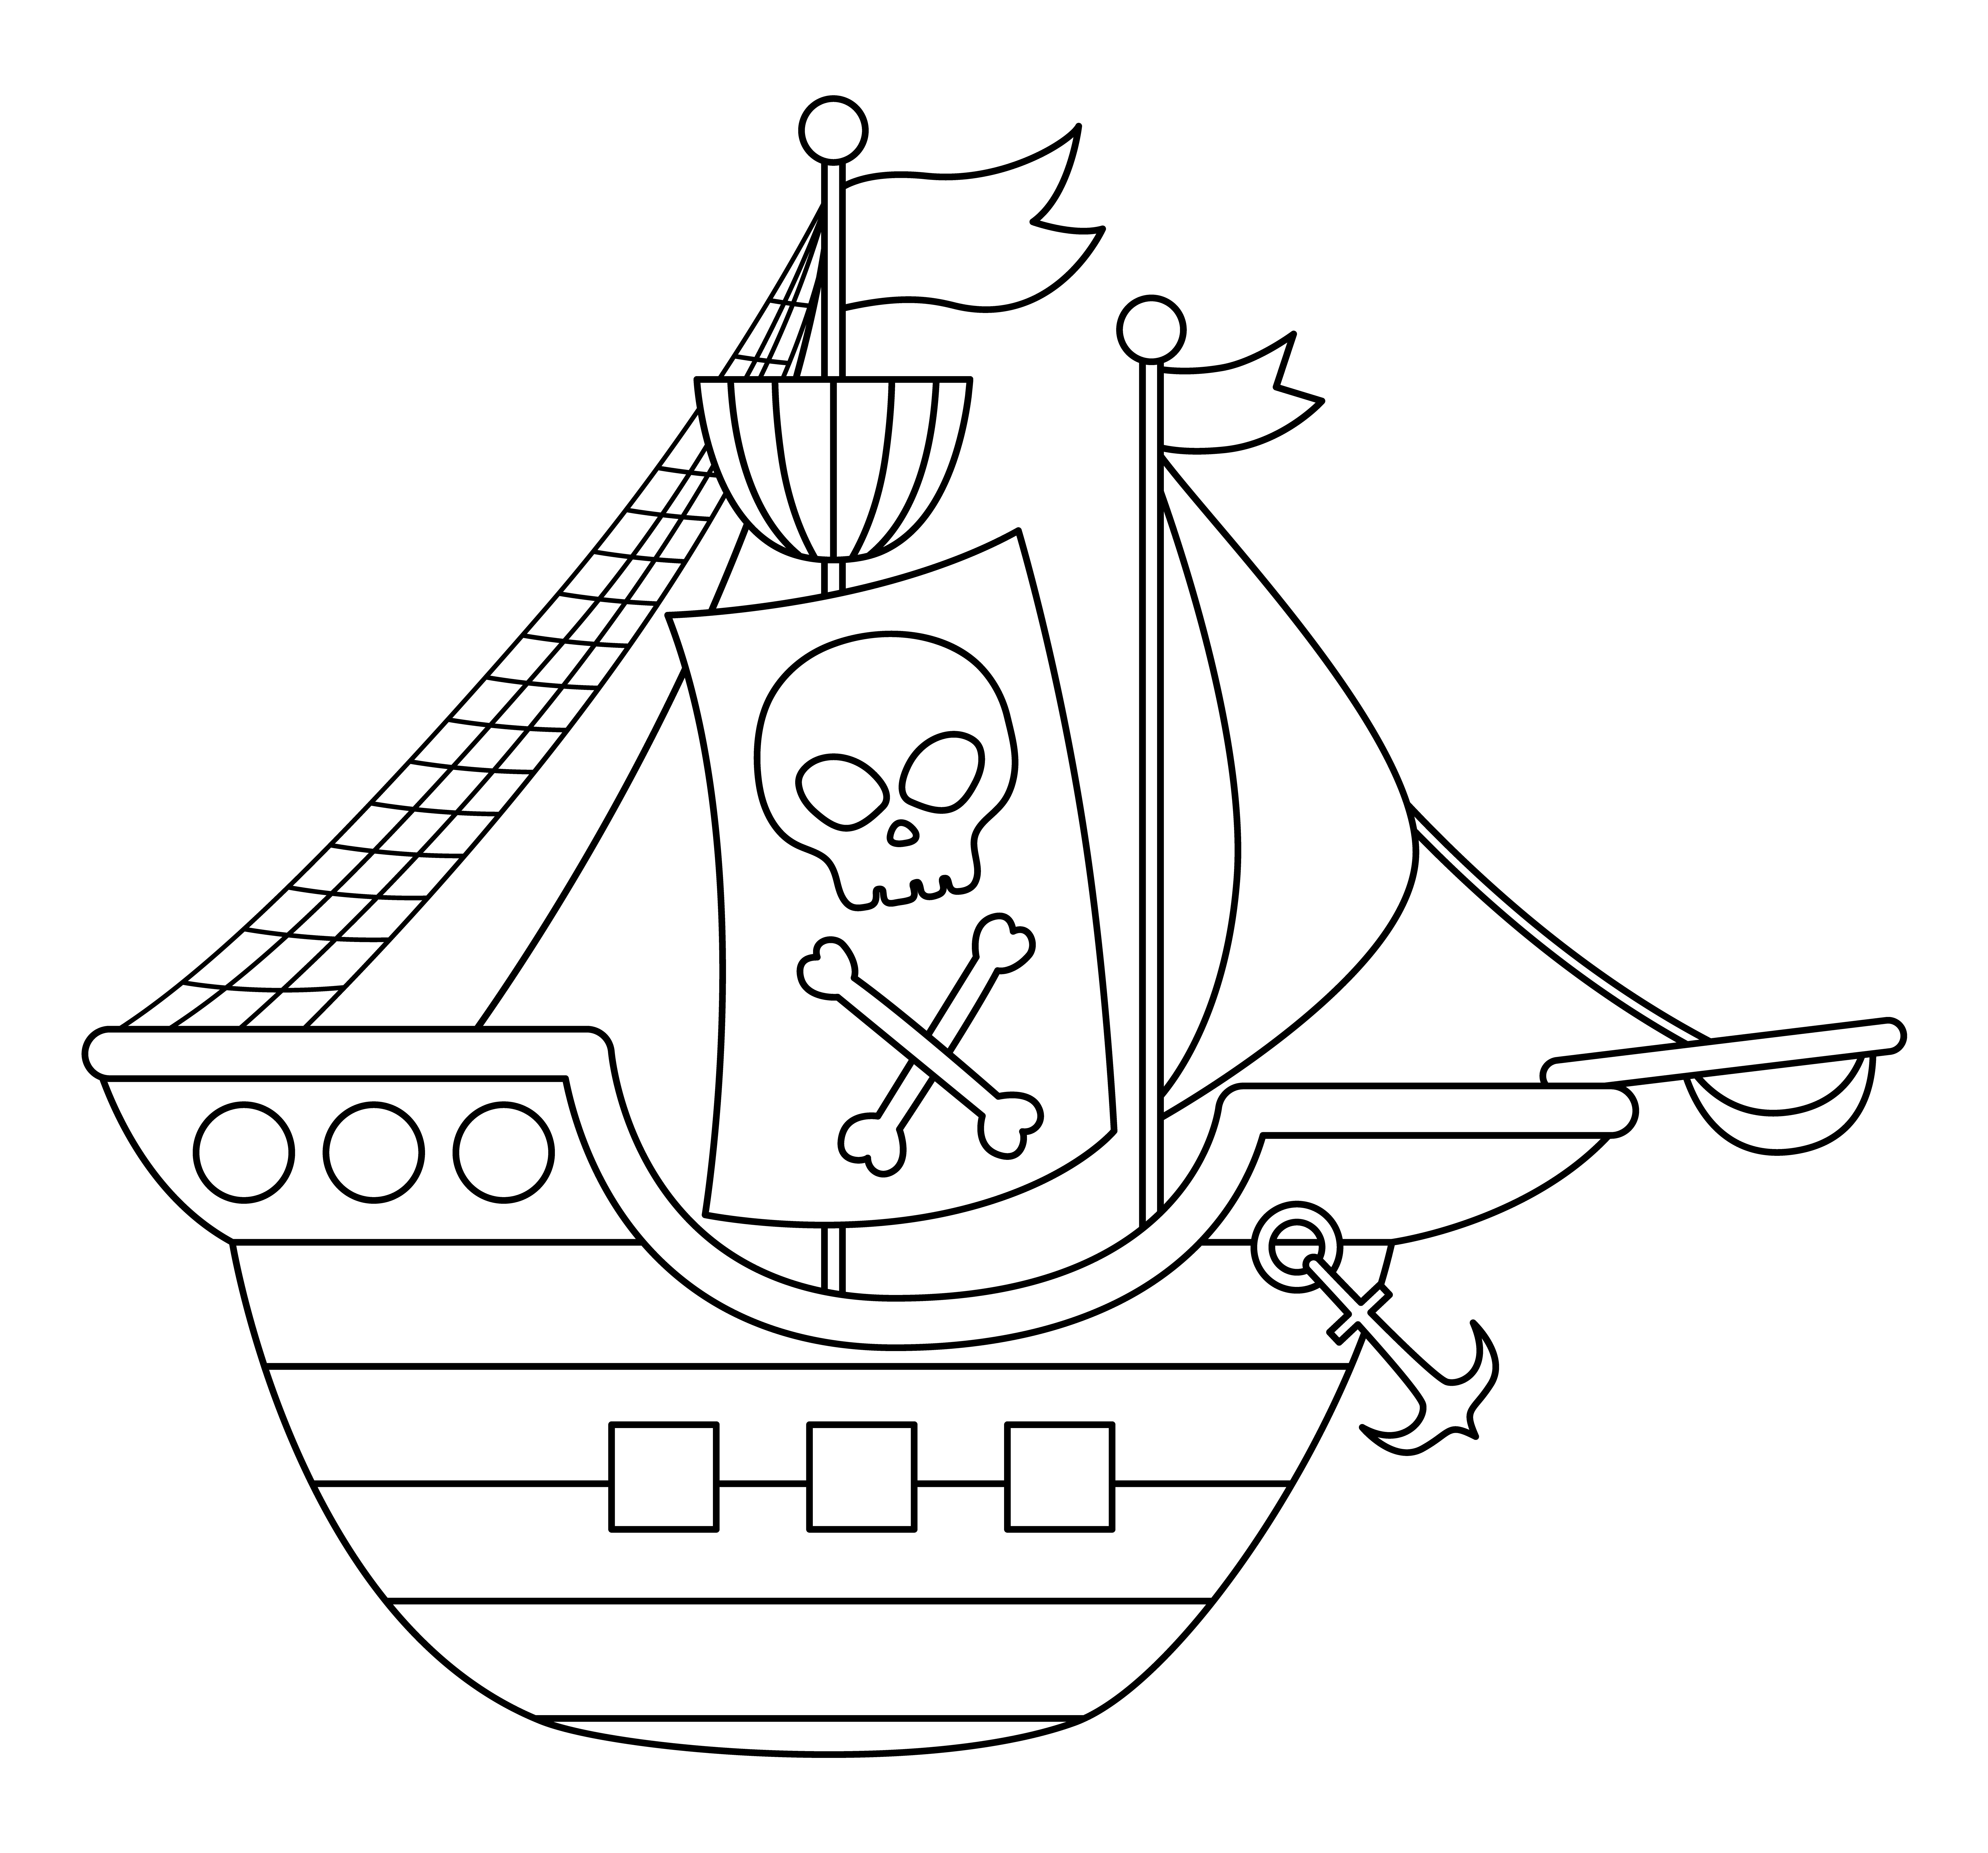 Раскраска пиратское судно с якорем и флагом формата А4 в высоком качестве